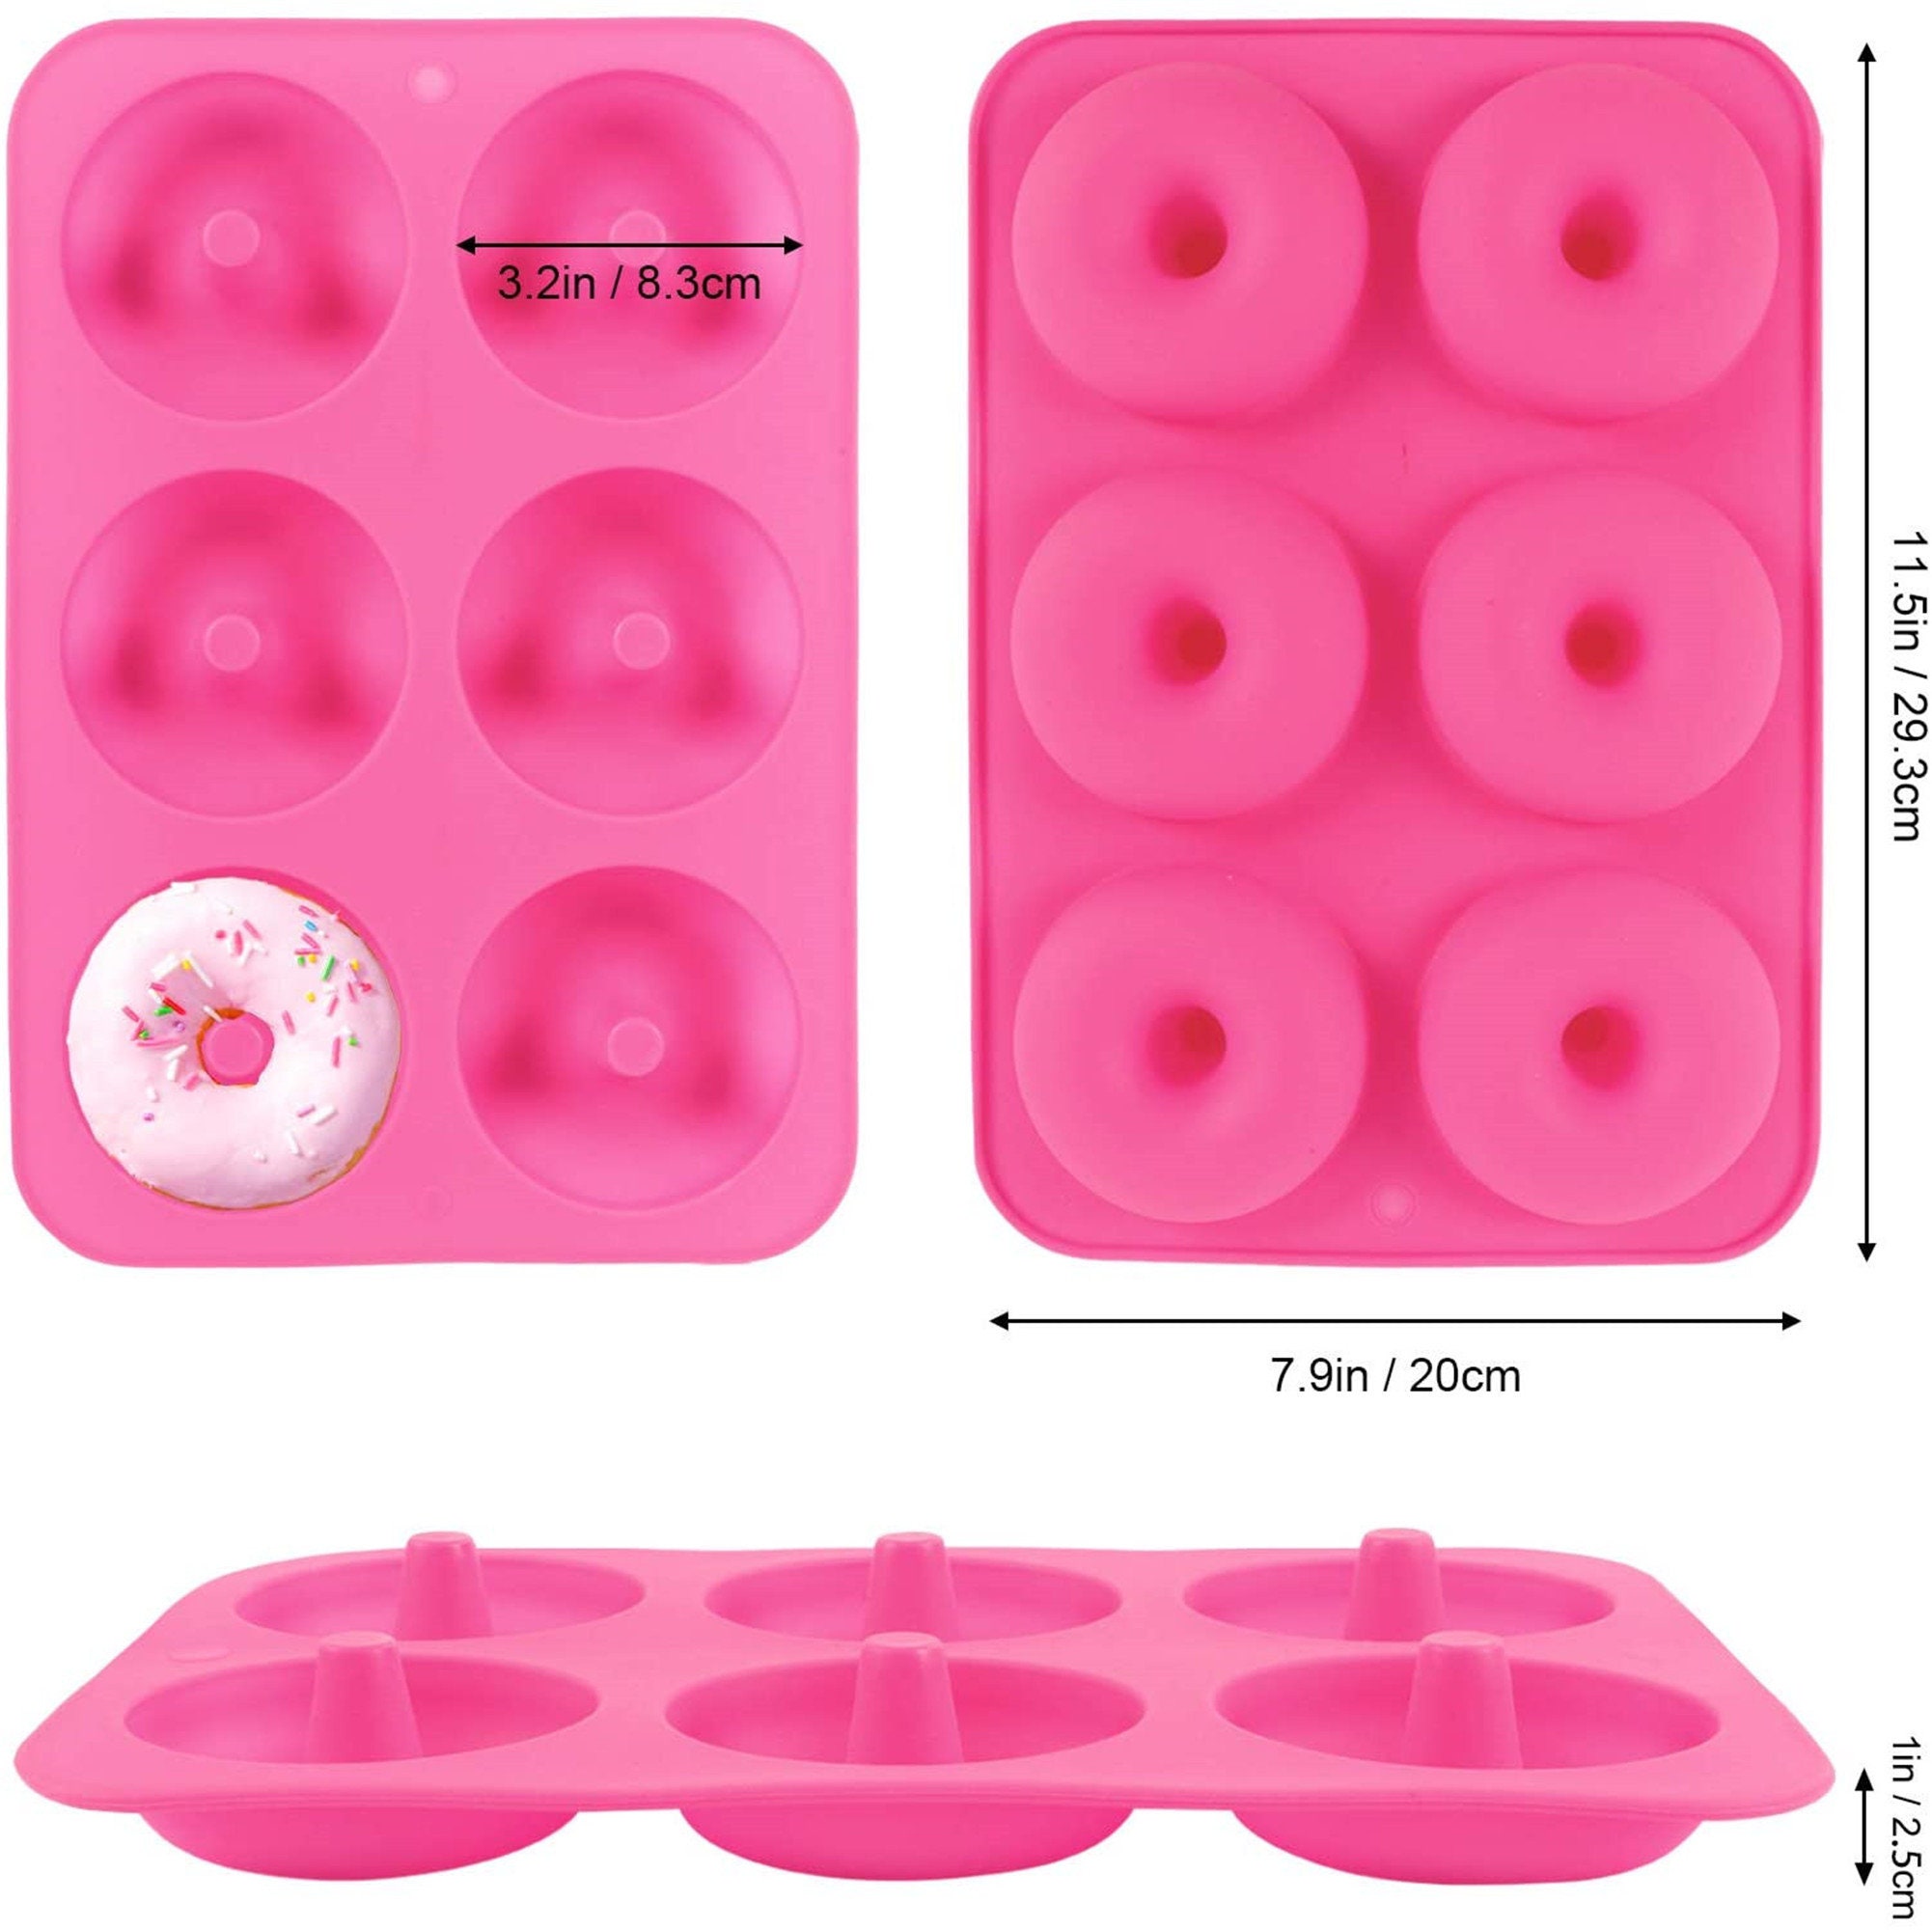  Walfos Molde de silicona para donas – Juego de moldes de  silicona antiadherentes para donas, simplemente sácalo. Resistente al  calor, hace que sea perfecto para tartas de donas, galletas, sin BPA